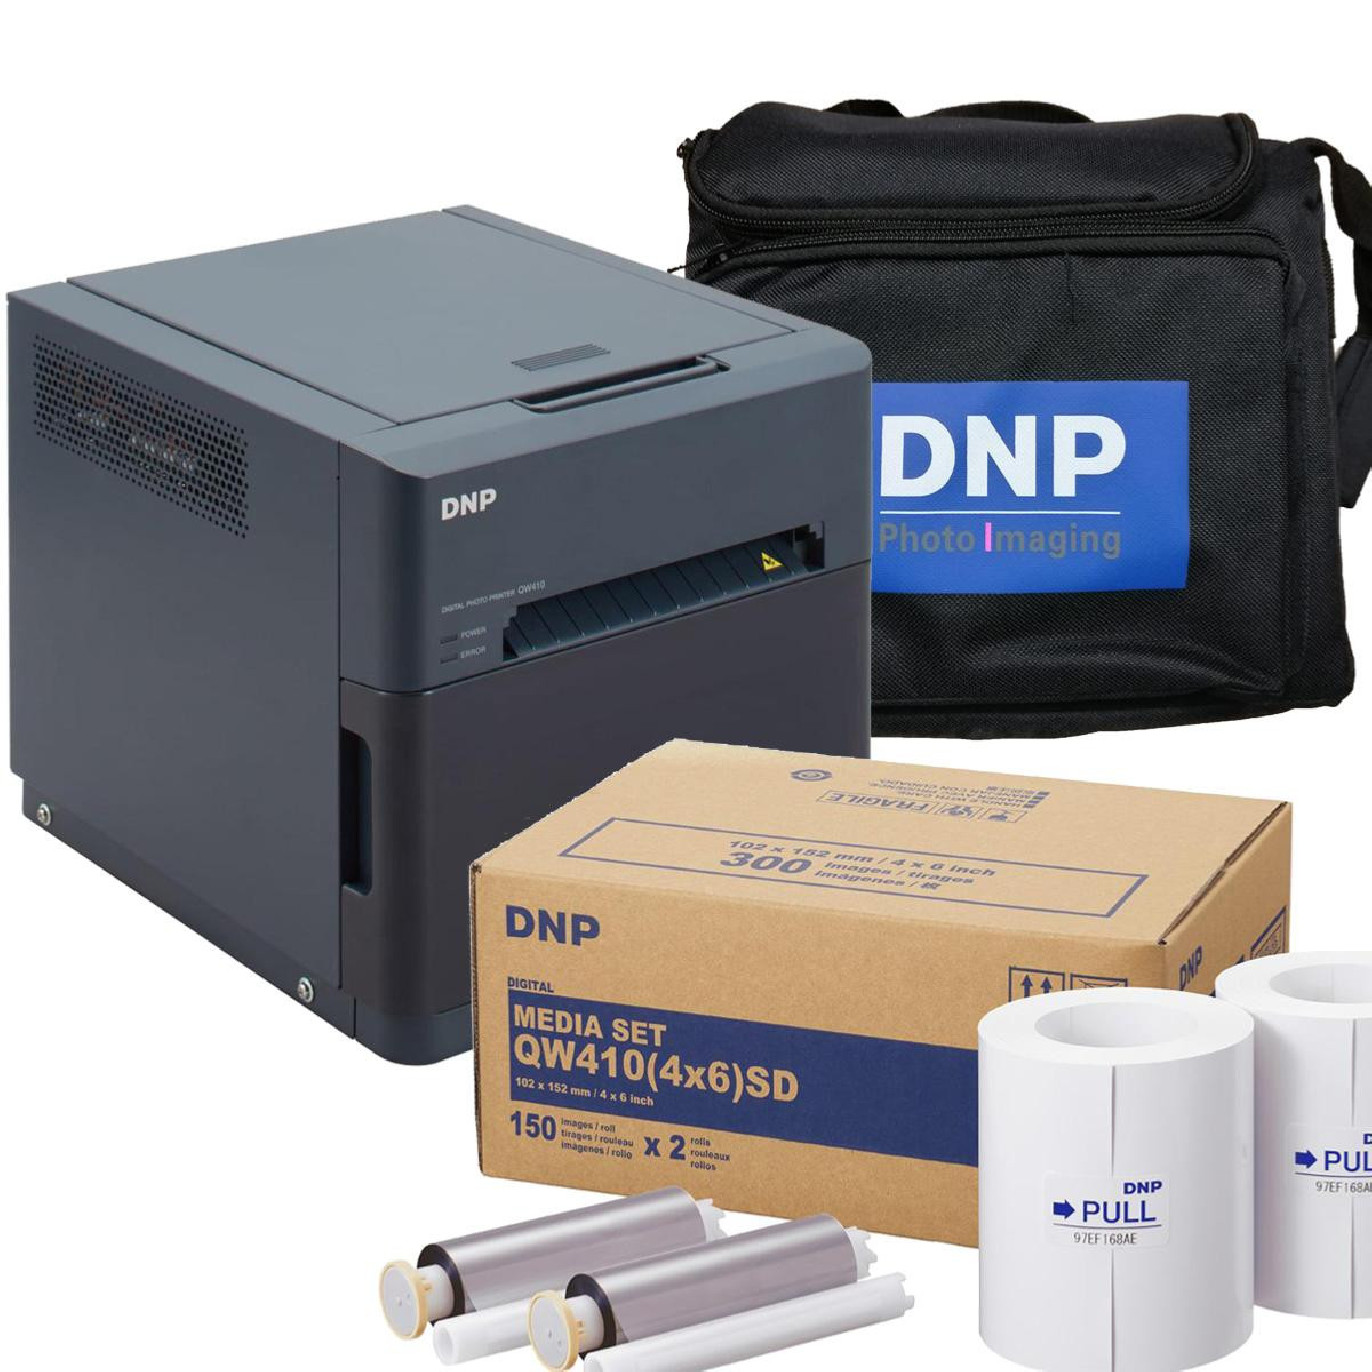 DNP Pack Imprimante QW410 avec 1 Kit d'impression 10x15 STD et 1